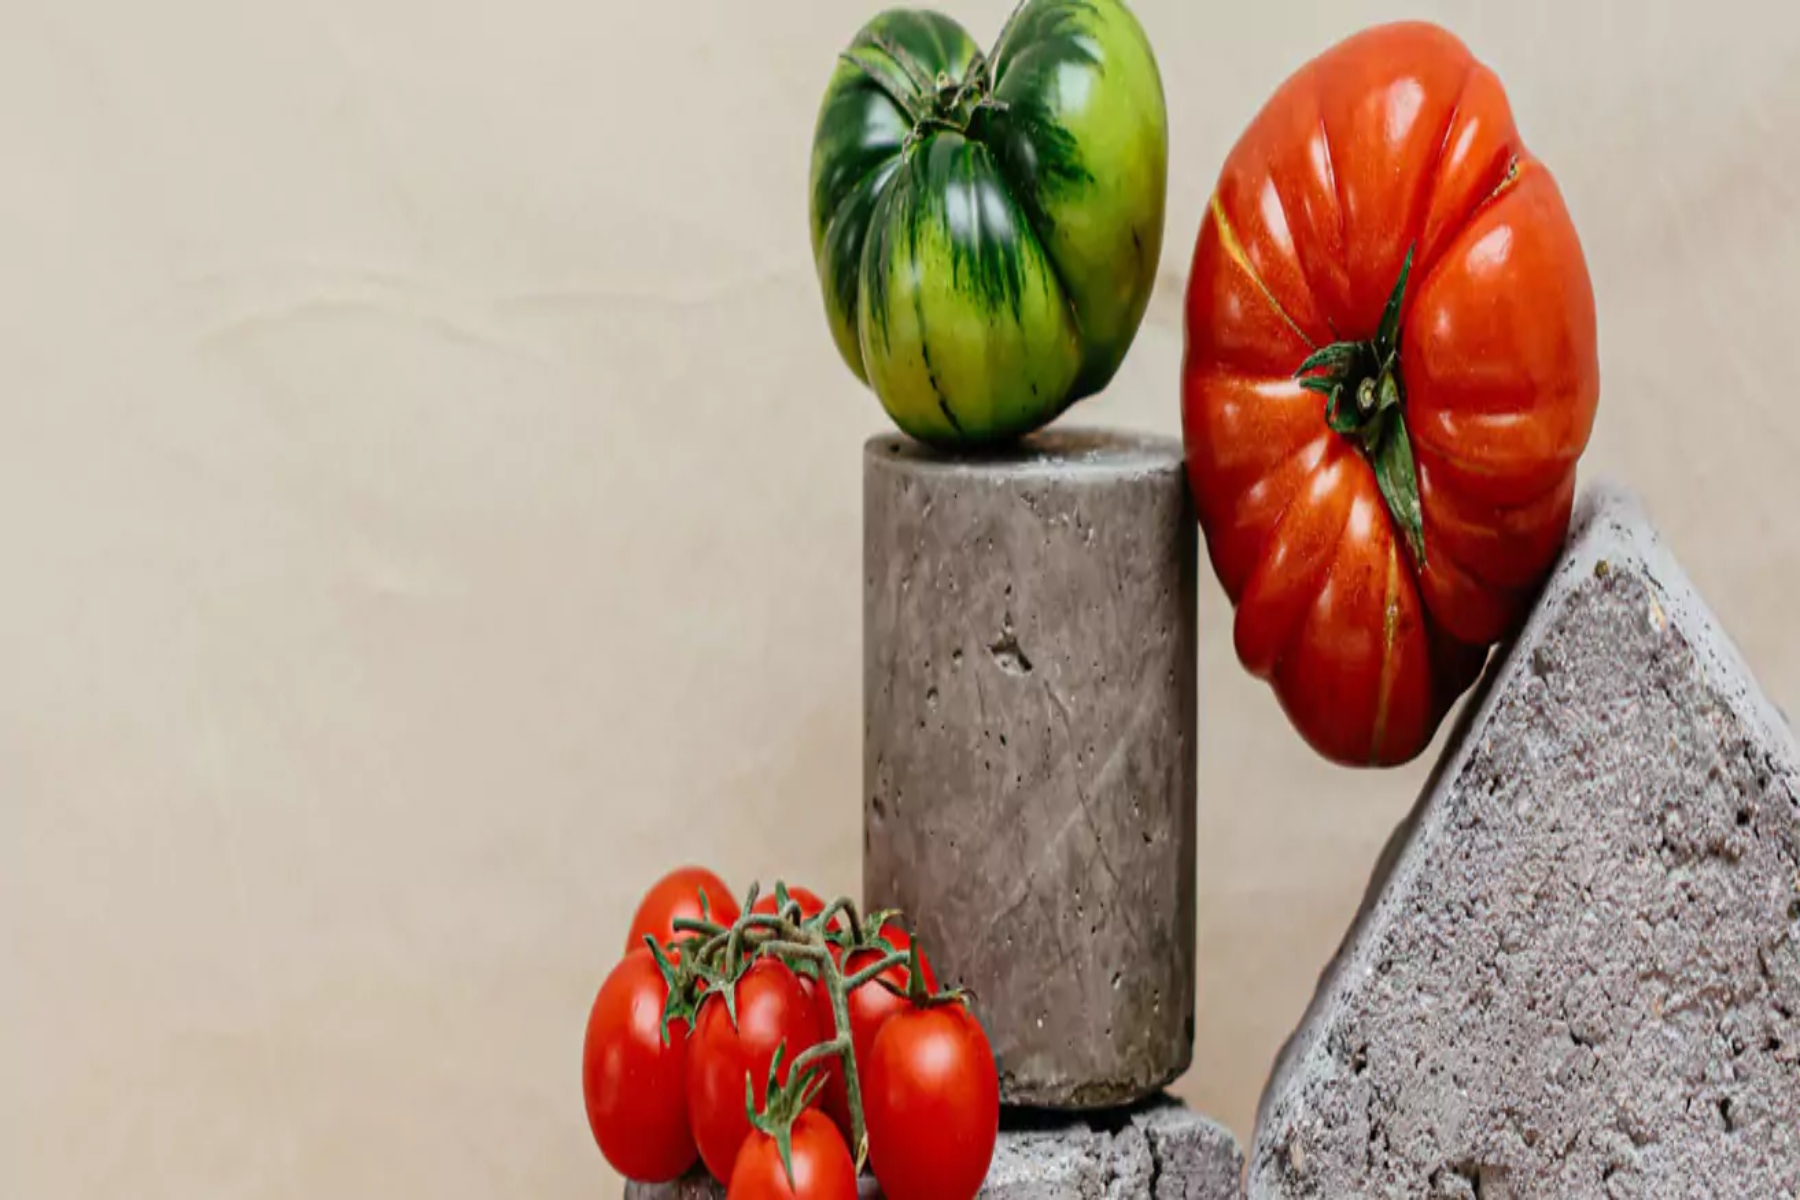 Ωμές ντομάτες: Βοηθάει η κατανάλωση ωμής ντομάτας στον διαβήτη;